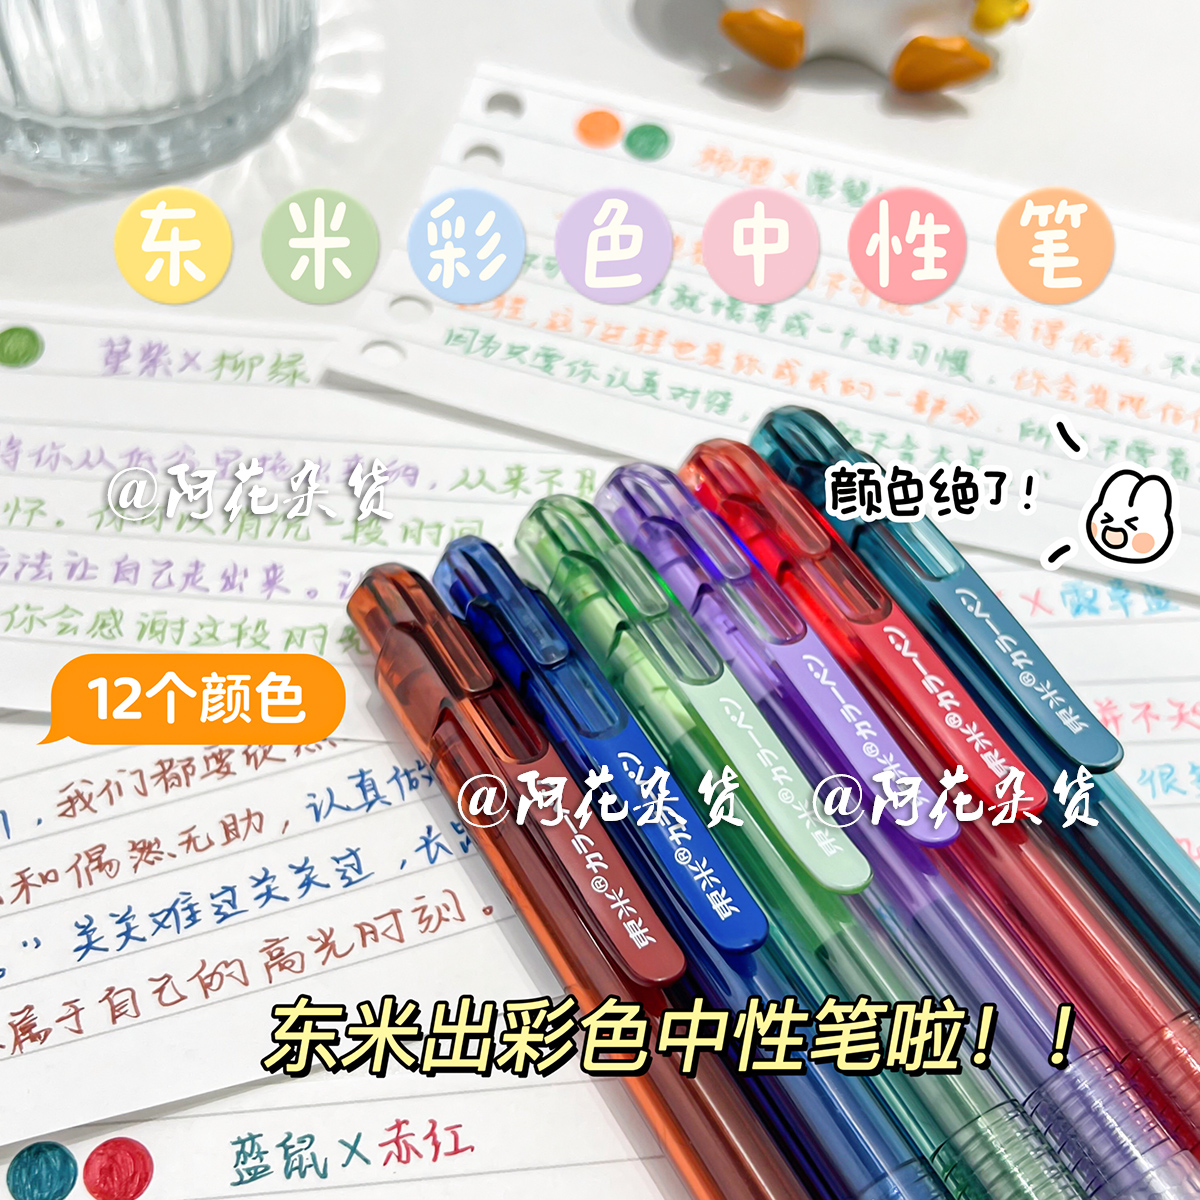 阿花杂货丨东米991彩色中性笔做笔记专用高颜值学生手帐0.5按动笔